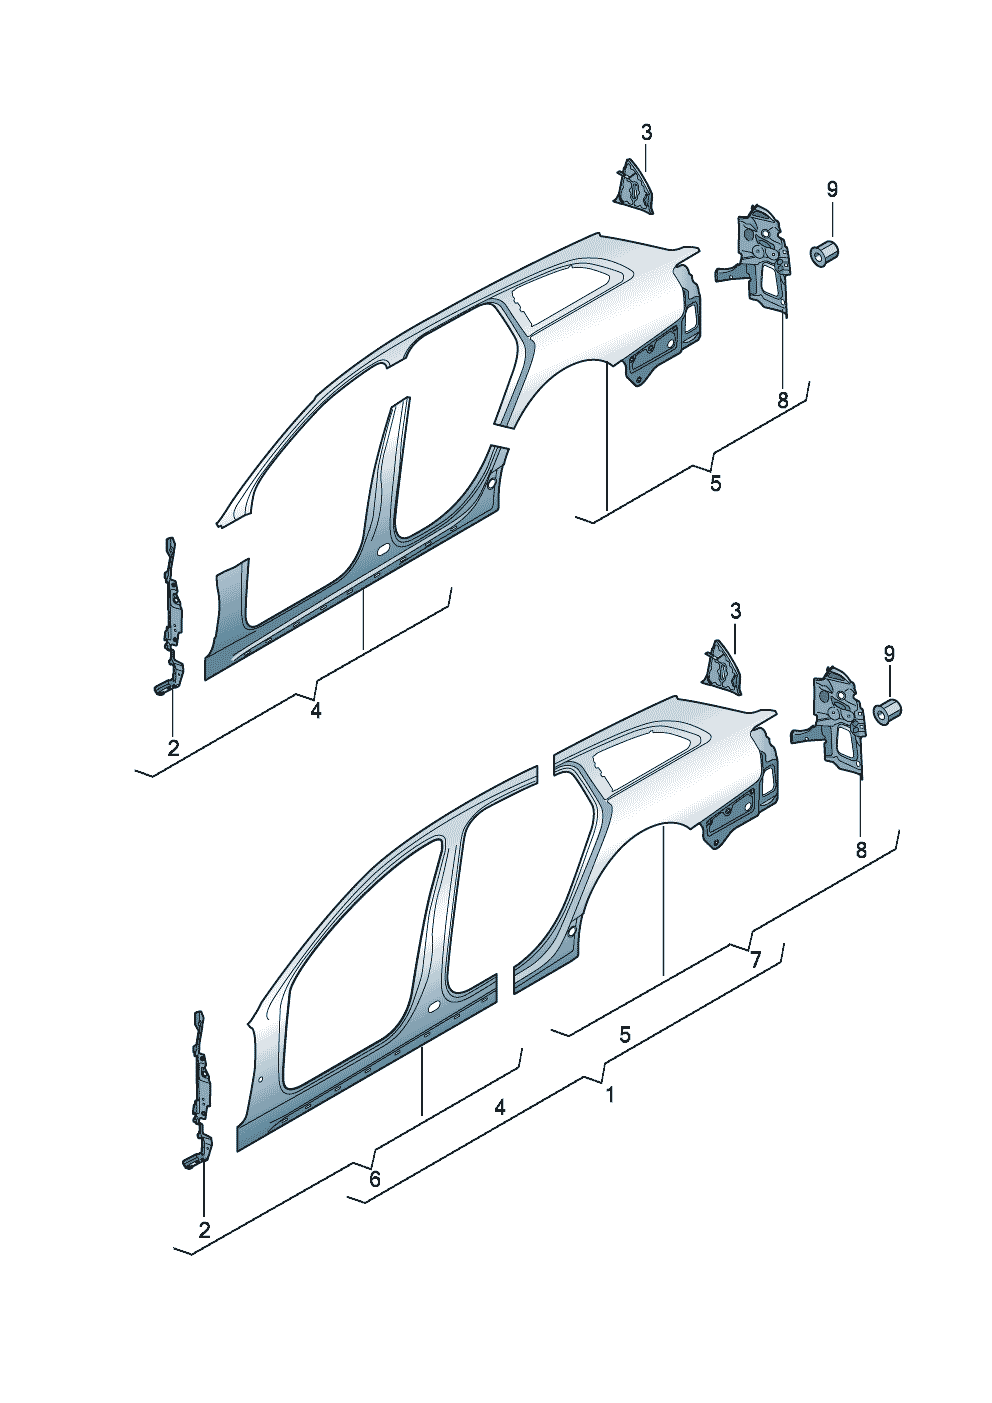 Kesit parçası - yan panel<br>çerçevesi sökme - Audi A6/Avant - a6